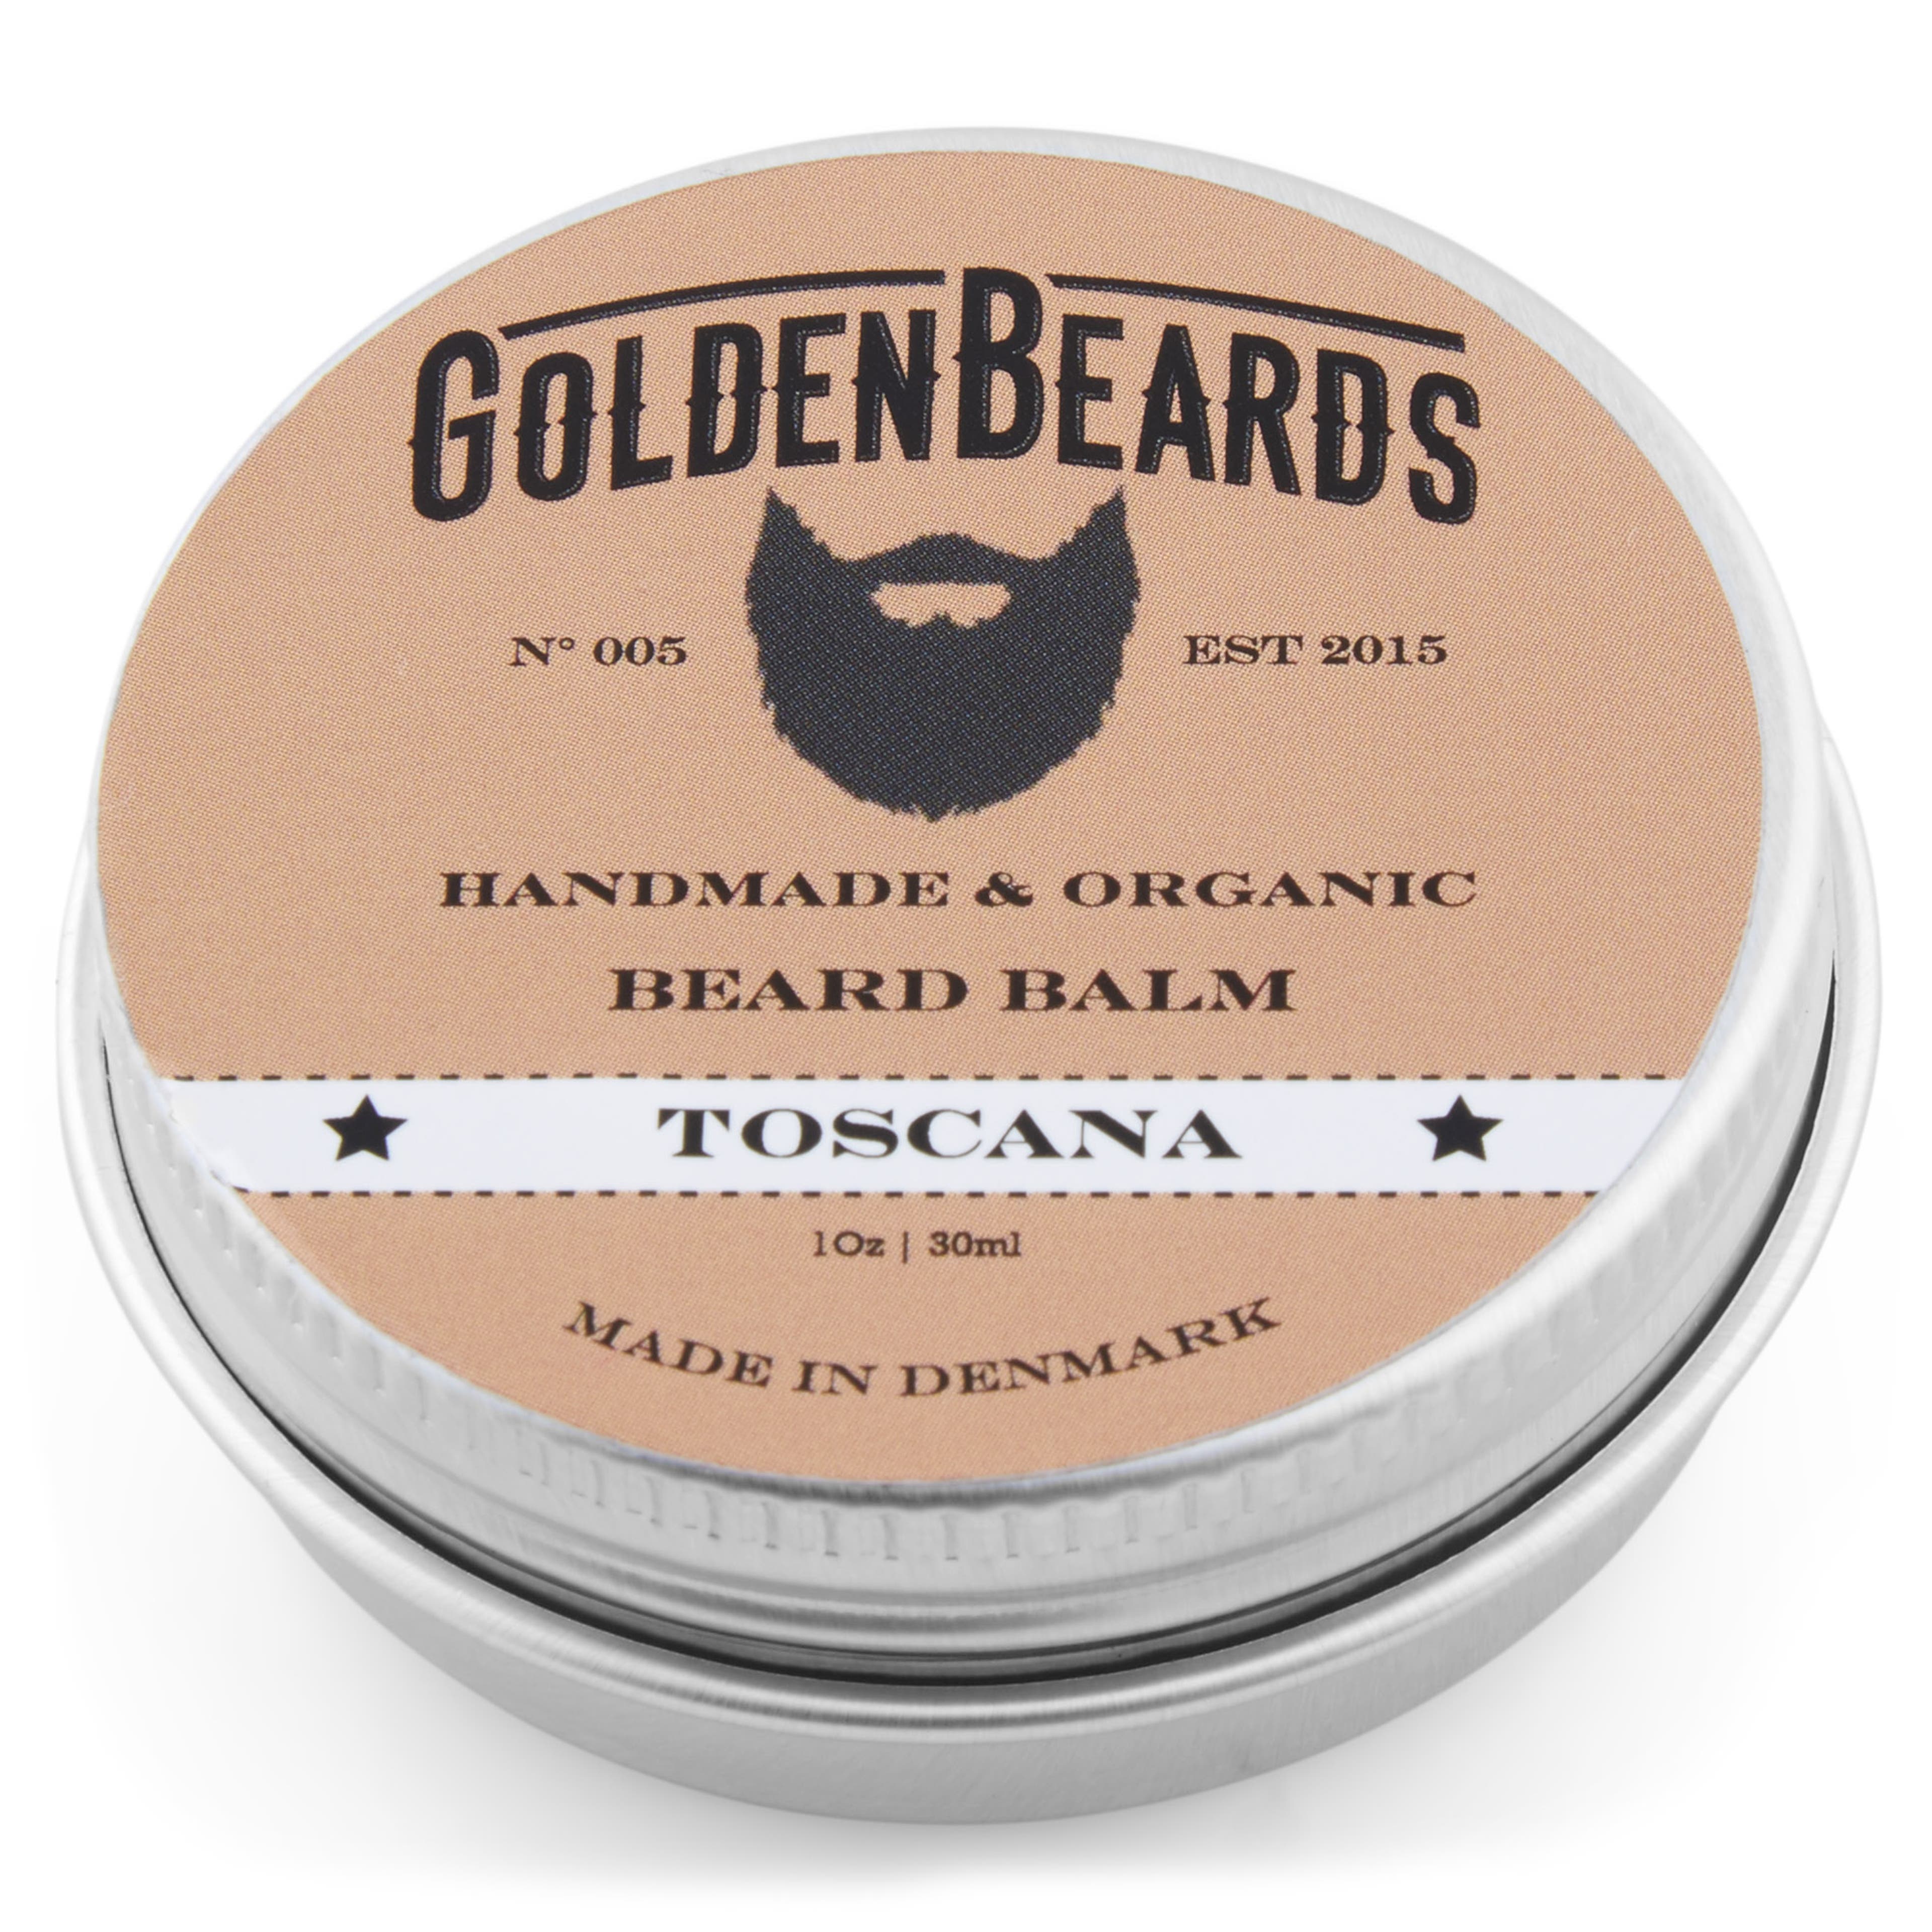 Balsam pentru barbă organic Toscana